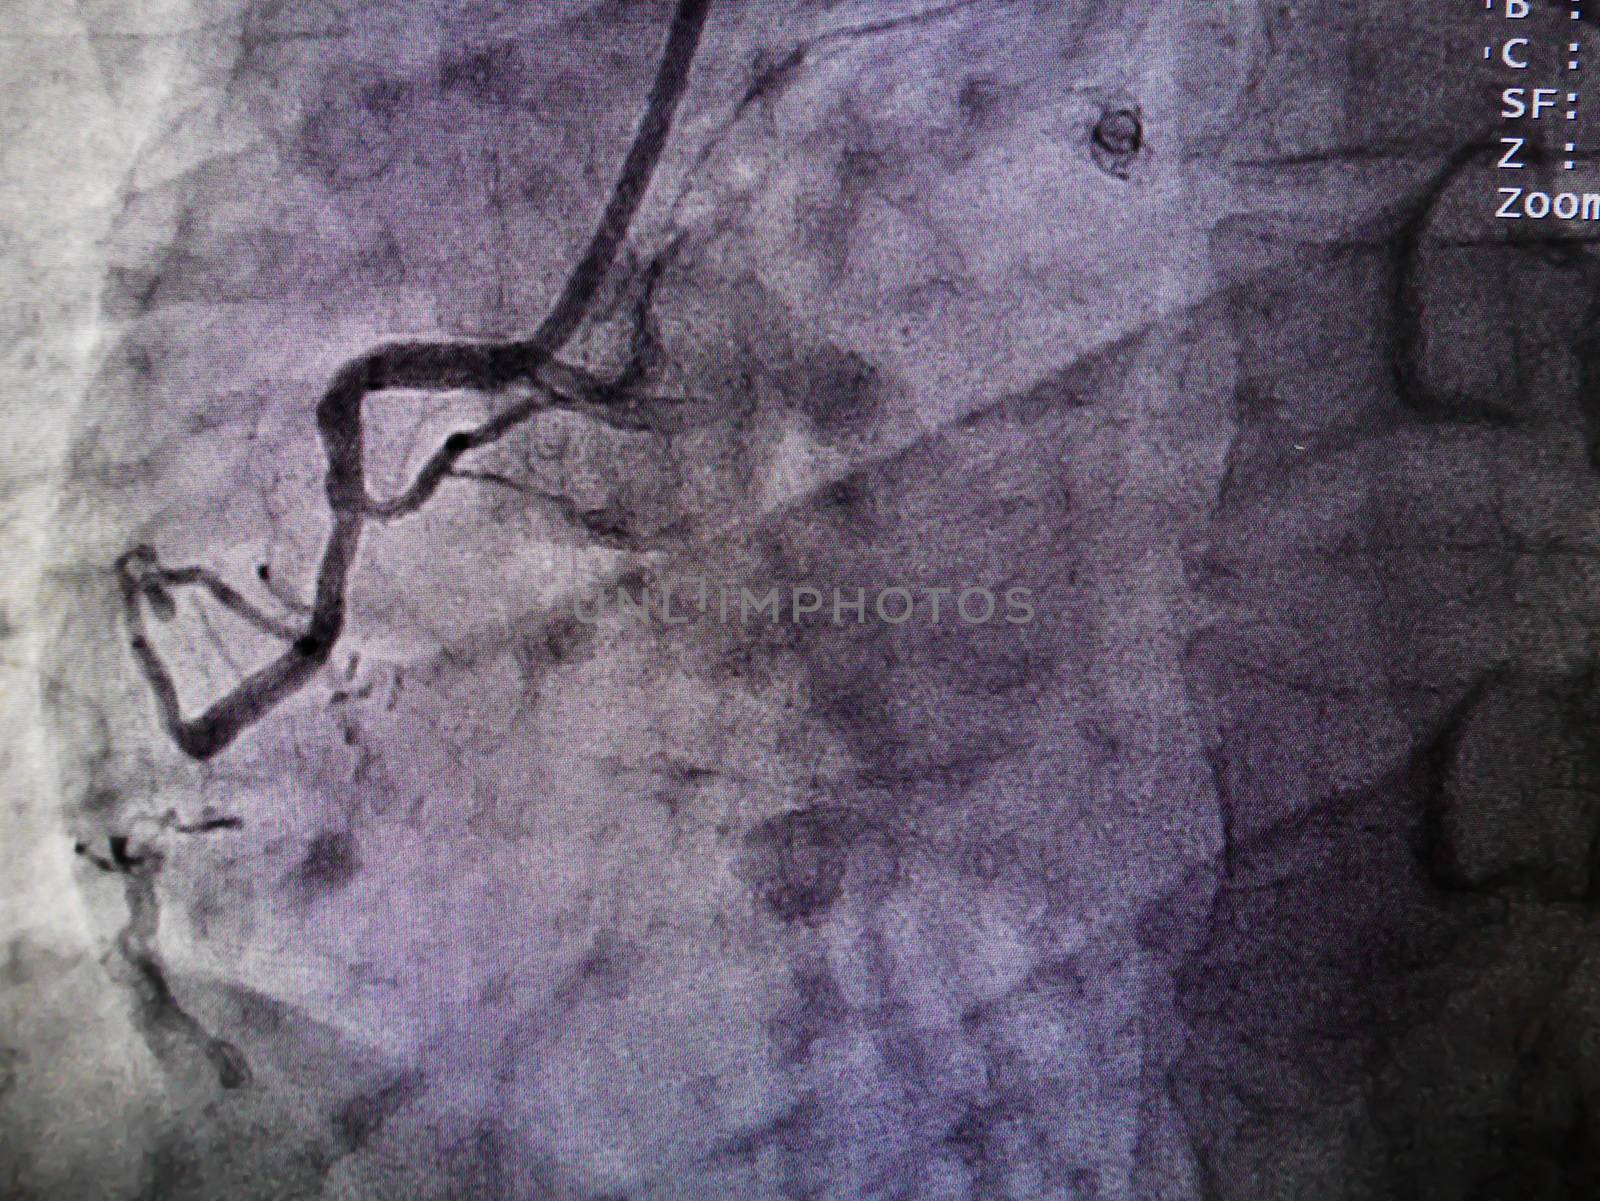 STEMI at right coronary artery from x-ray in cardiac catheterization laboratory